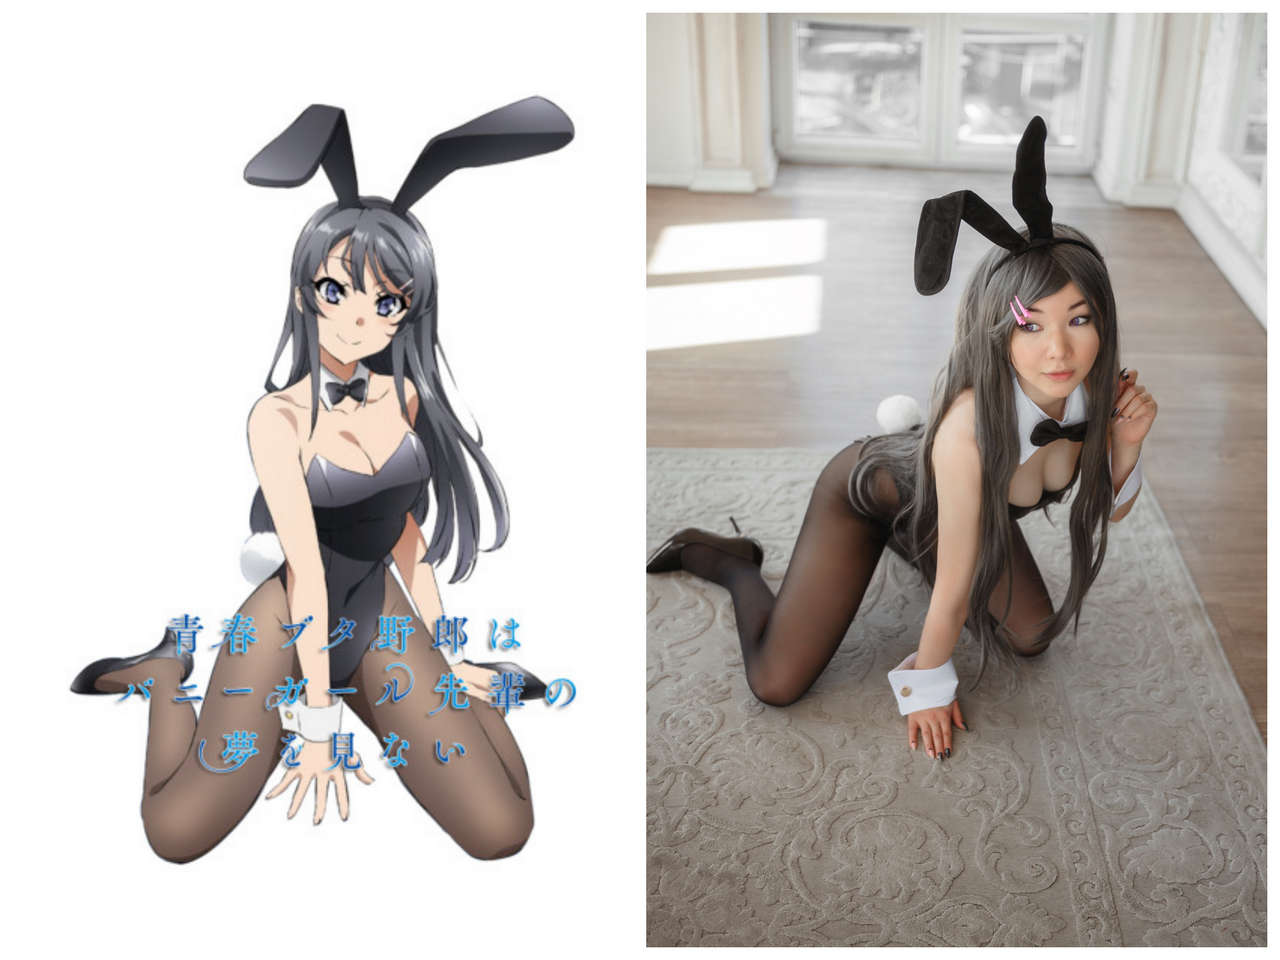 Self Mai Sakurajima Bunny Girl By Miss Mononok